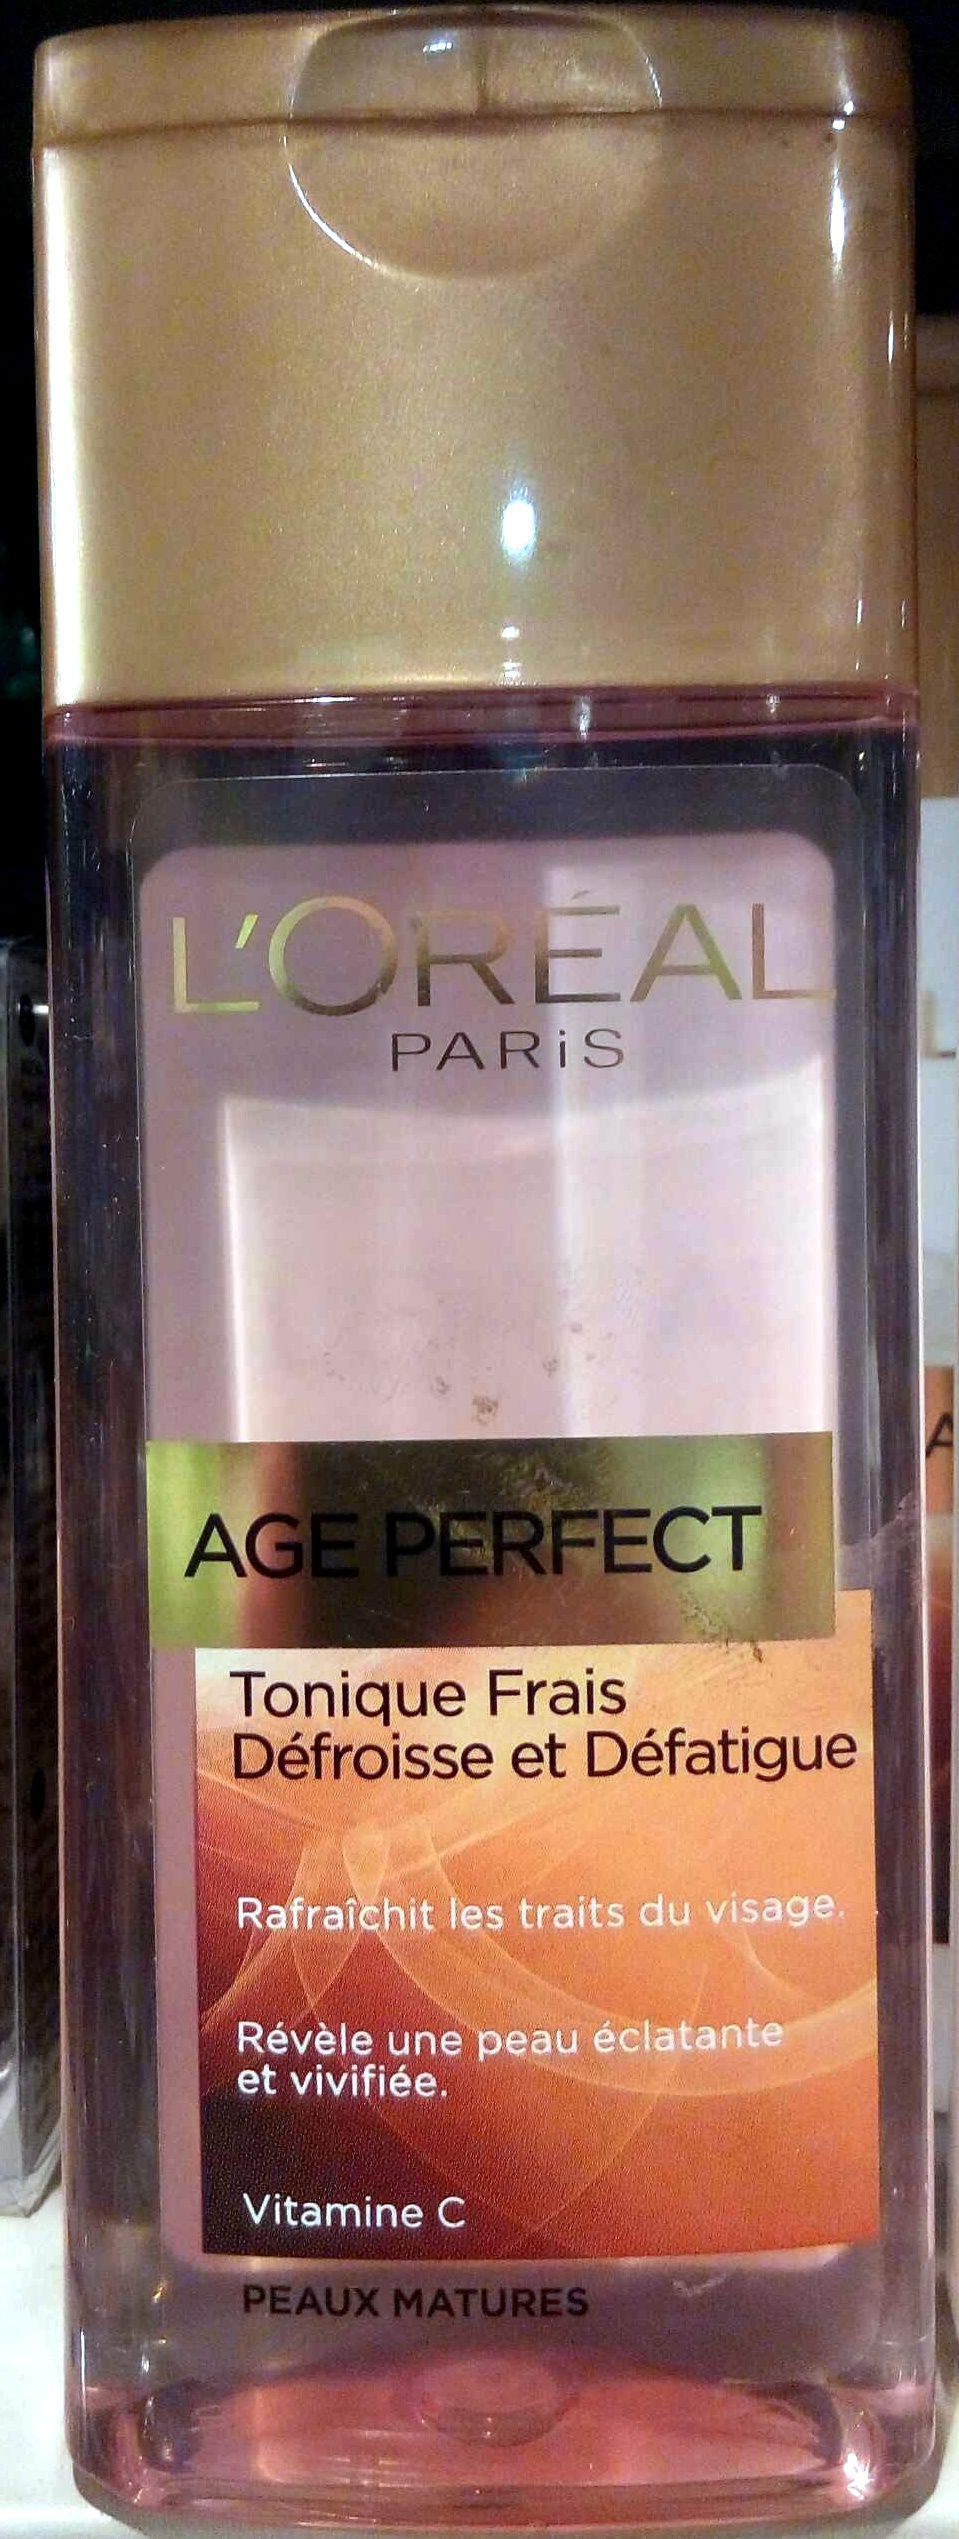 Age Perfect Tonique Frais Peaux Matures - Product - fr